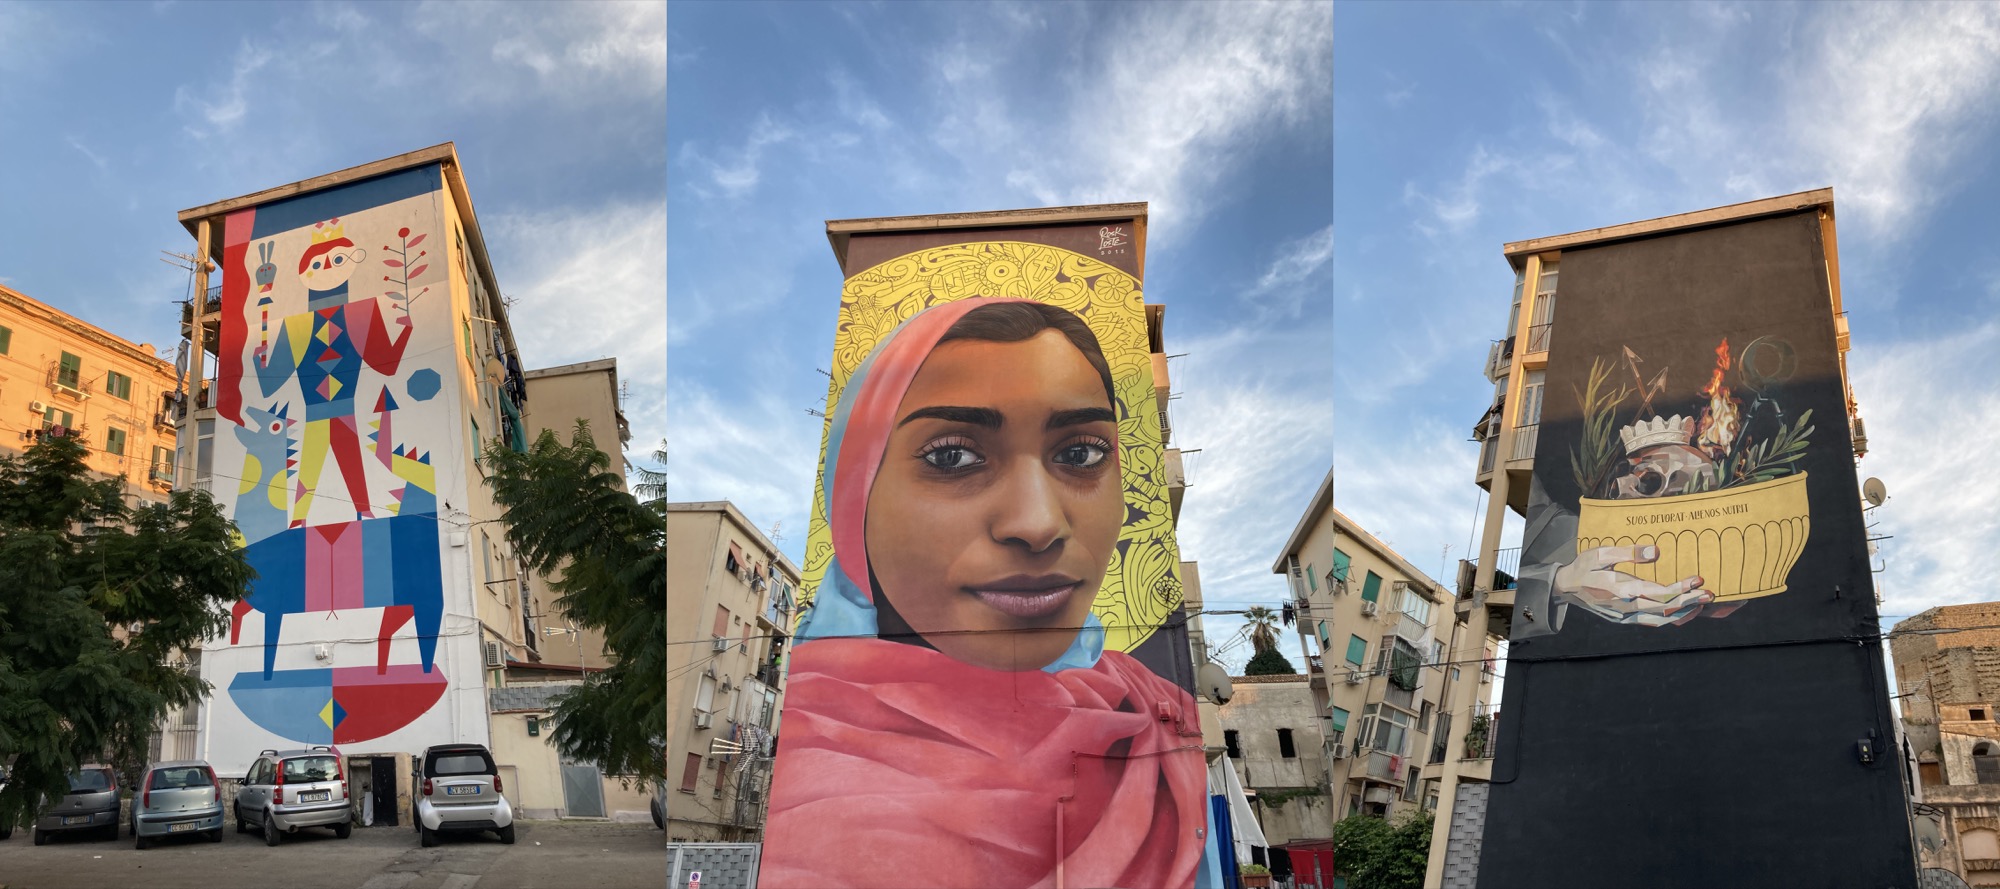 Graffitti an Wohnhäusern in Palermo, links eine grafische Umsetzung eines Artisten auf einem Tier, mittig eine dunkelhäutige Frau mit Kopftuch vor einem Sonnenring, rechts ein Stillleben mit Totenkopf, Feuer und Krone